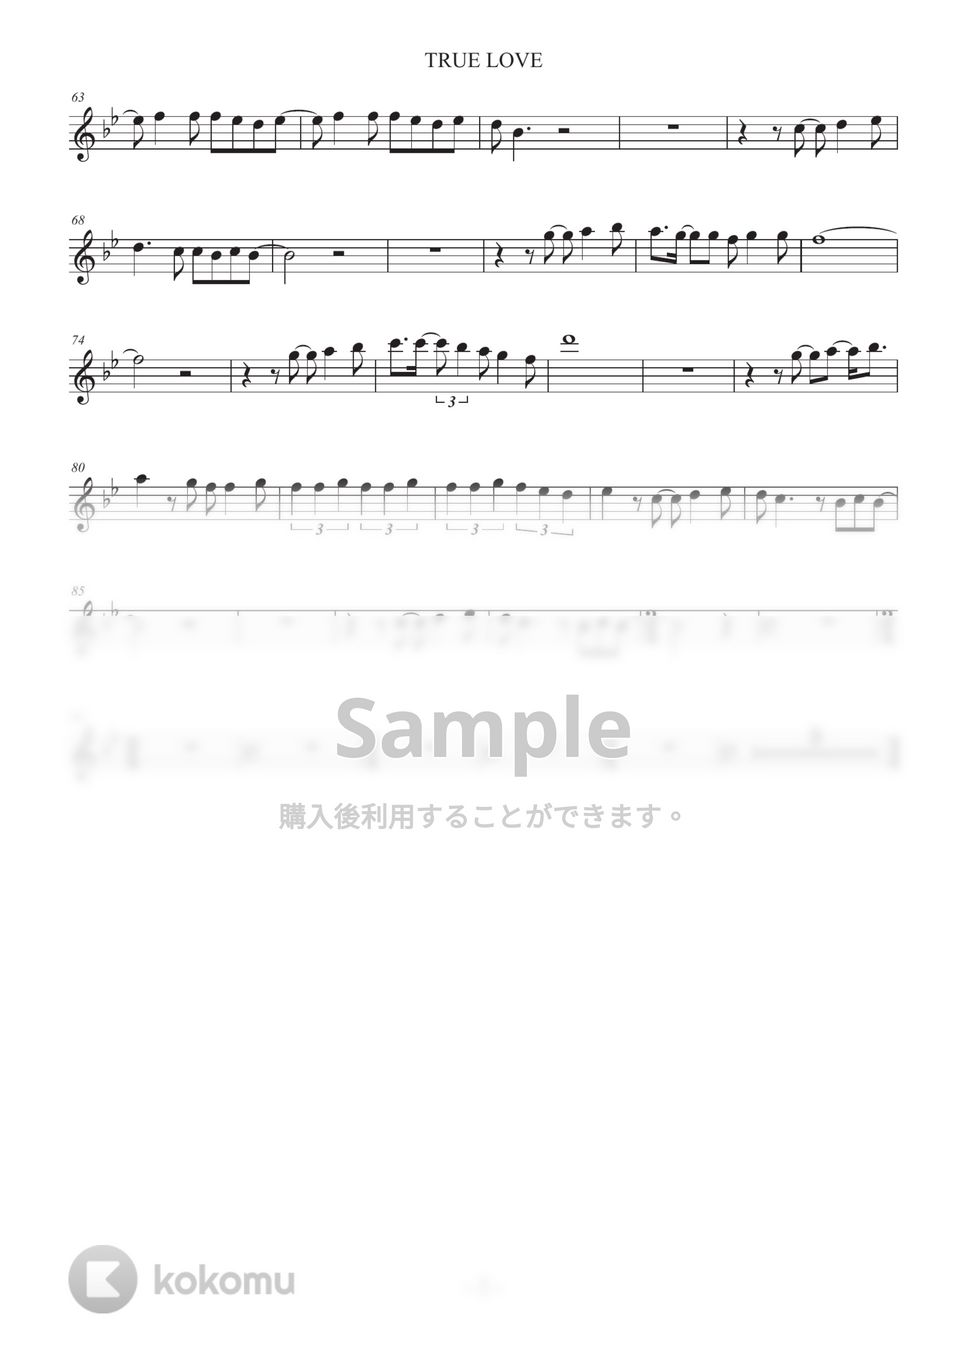 藤井フミヤ - TRUE LOVE (in E♭) by HiRO Sax